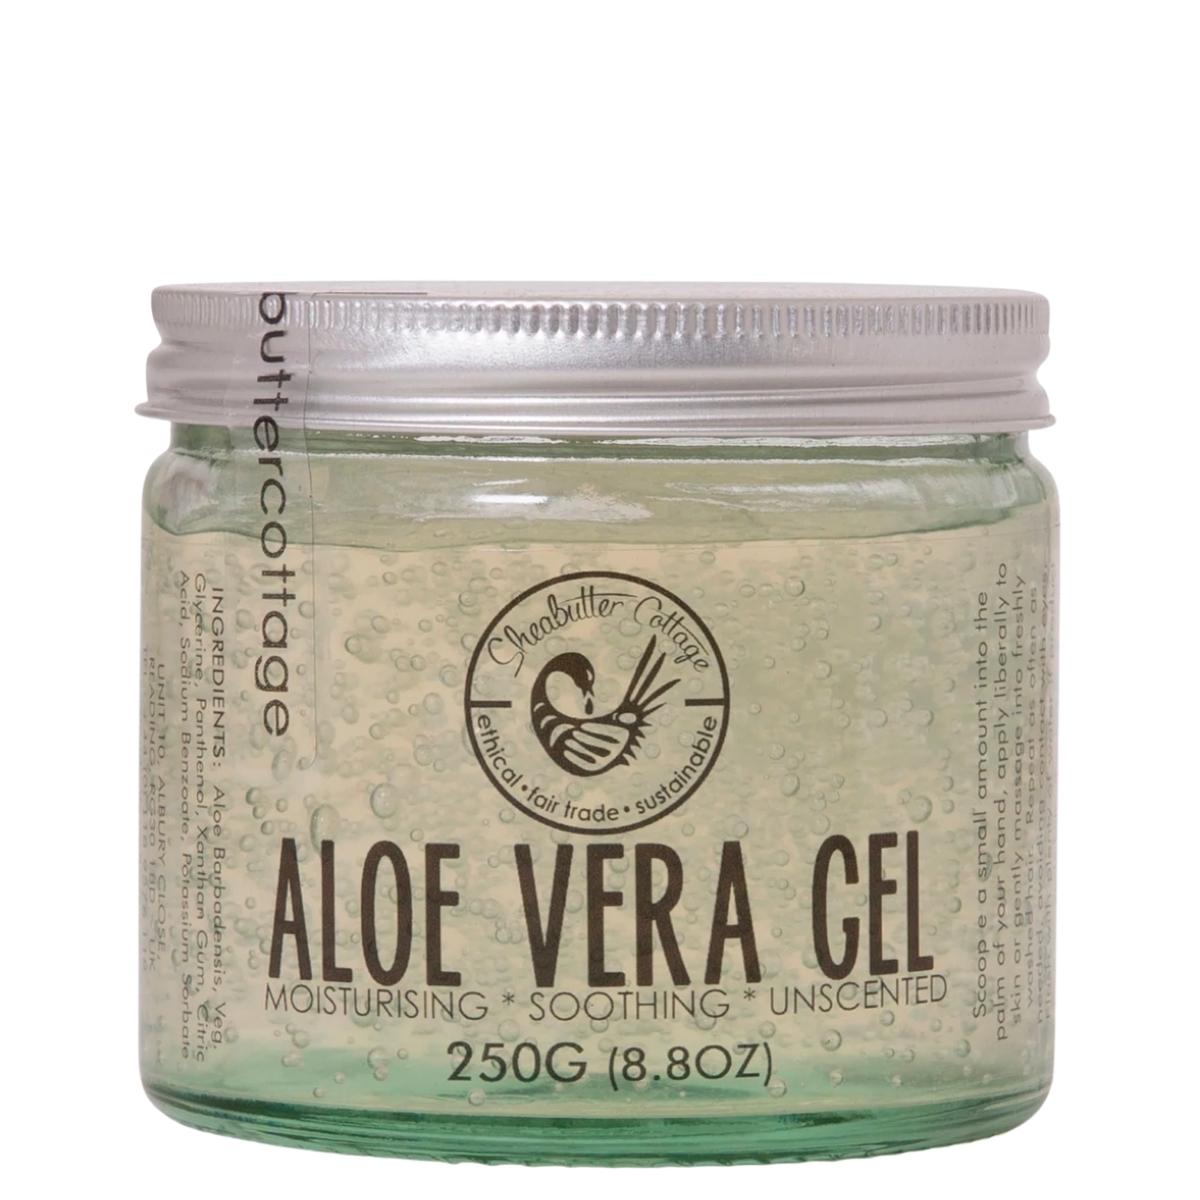 Le gel d’Aloe Vera peut être utilisé de la racine aux pointes pour soulager un cuir chevelu irrité, fixer un style protecteur ou pour réparer les pointes.